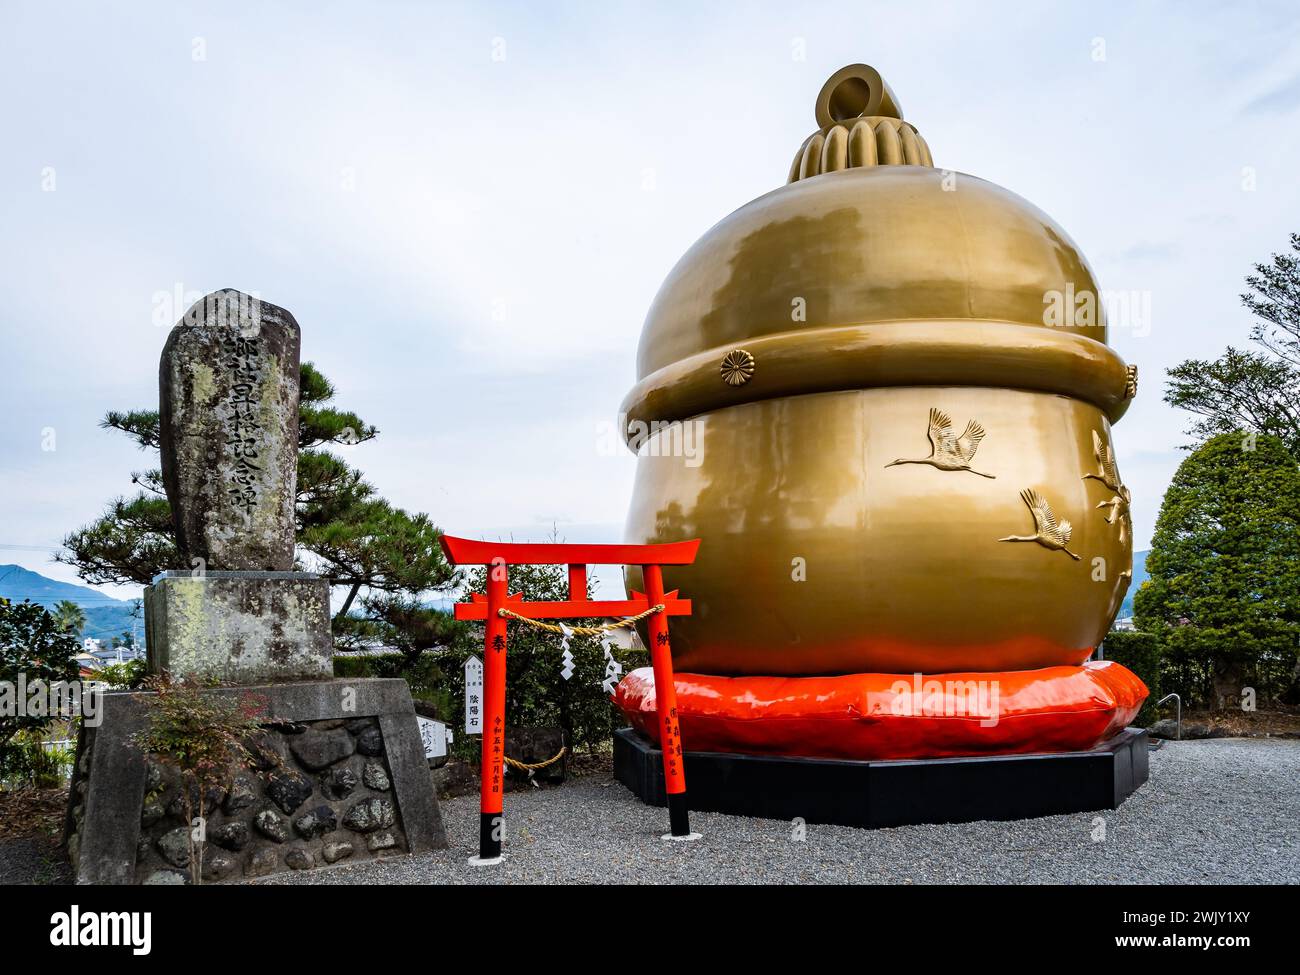 Présentez le modèle de la plus grande cloche au Japon. Sanctuaire Hakozaki Hachiman. Izumi, Kagoshima, Japon. Banque D'Images